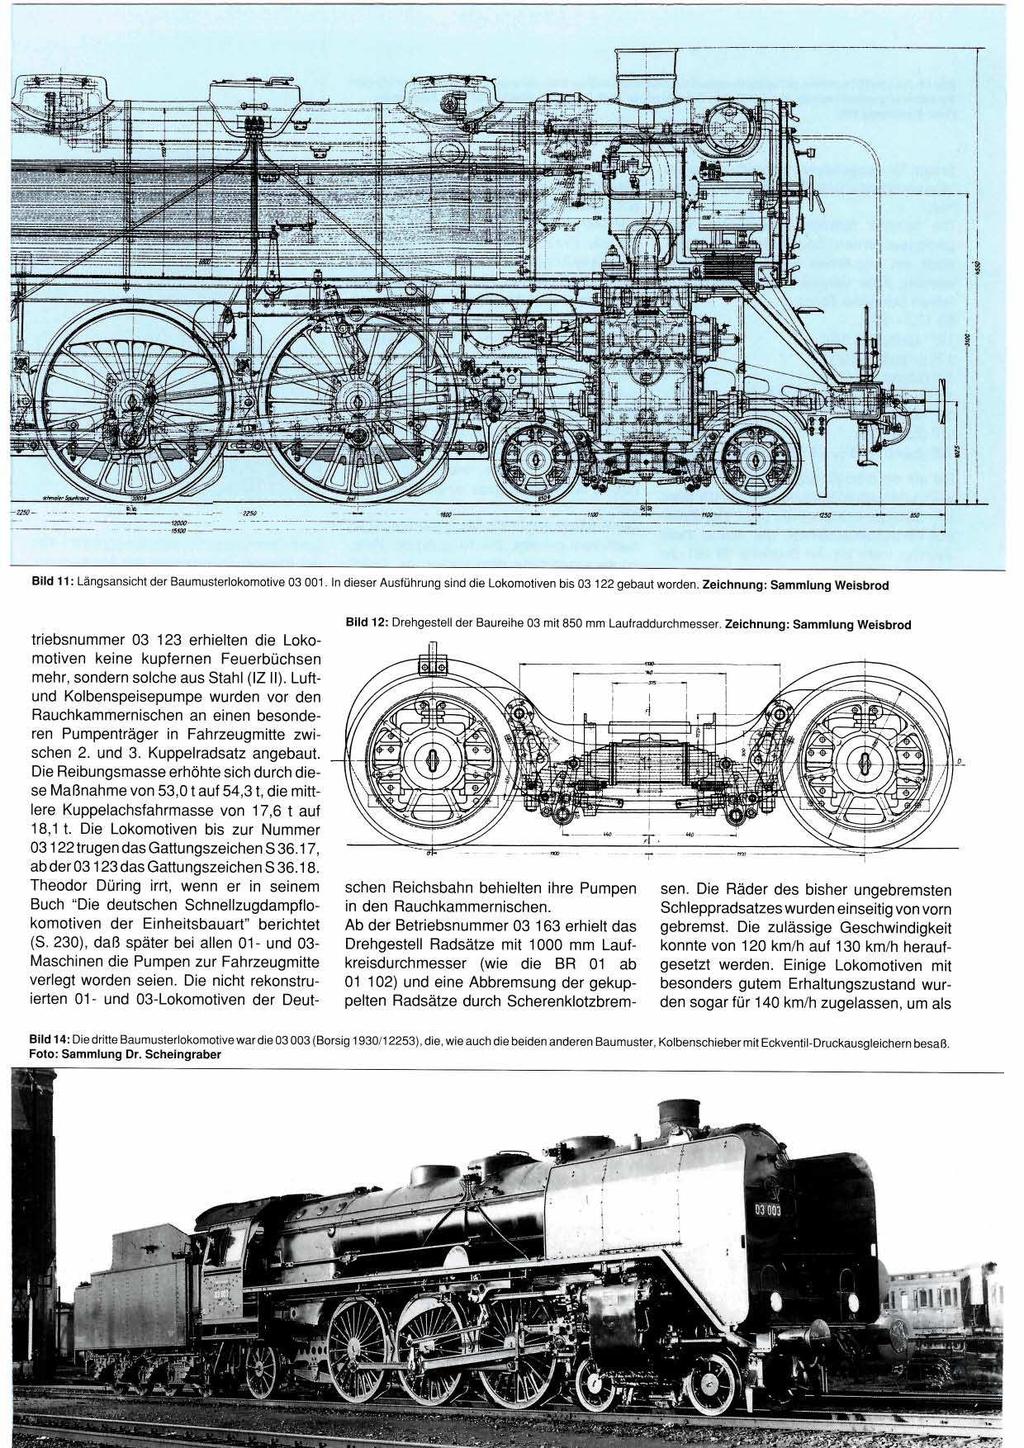 Bild 11: Längsansicht der Baumusterlokomotive 03 001. In dieser Ausführung sind die Lokomotiven bis 03 122 gebaut worden.